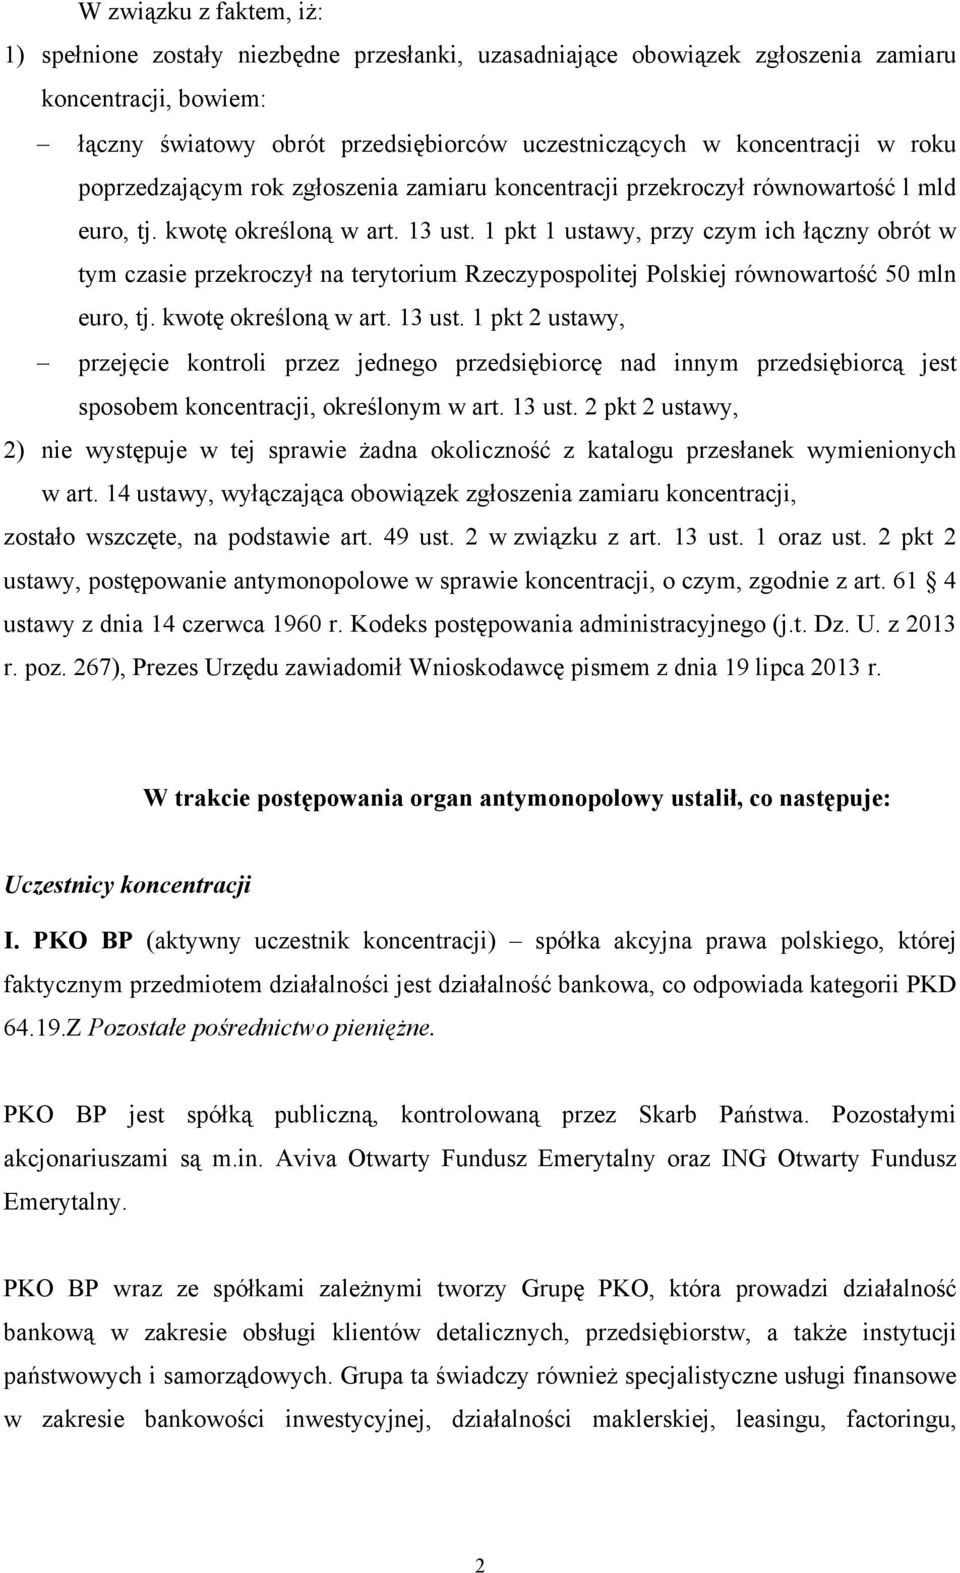 1 pkt 1 ustawy, przy czym ich łączny obrót w tym czasie przekroczył na terytorium Rzeczypospolitej Polskiej równowartość 50 mln euro, tj. kwotę określoną w art. 13 ust.